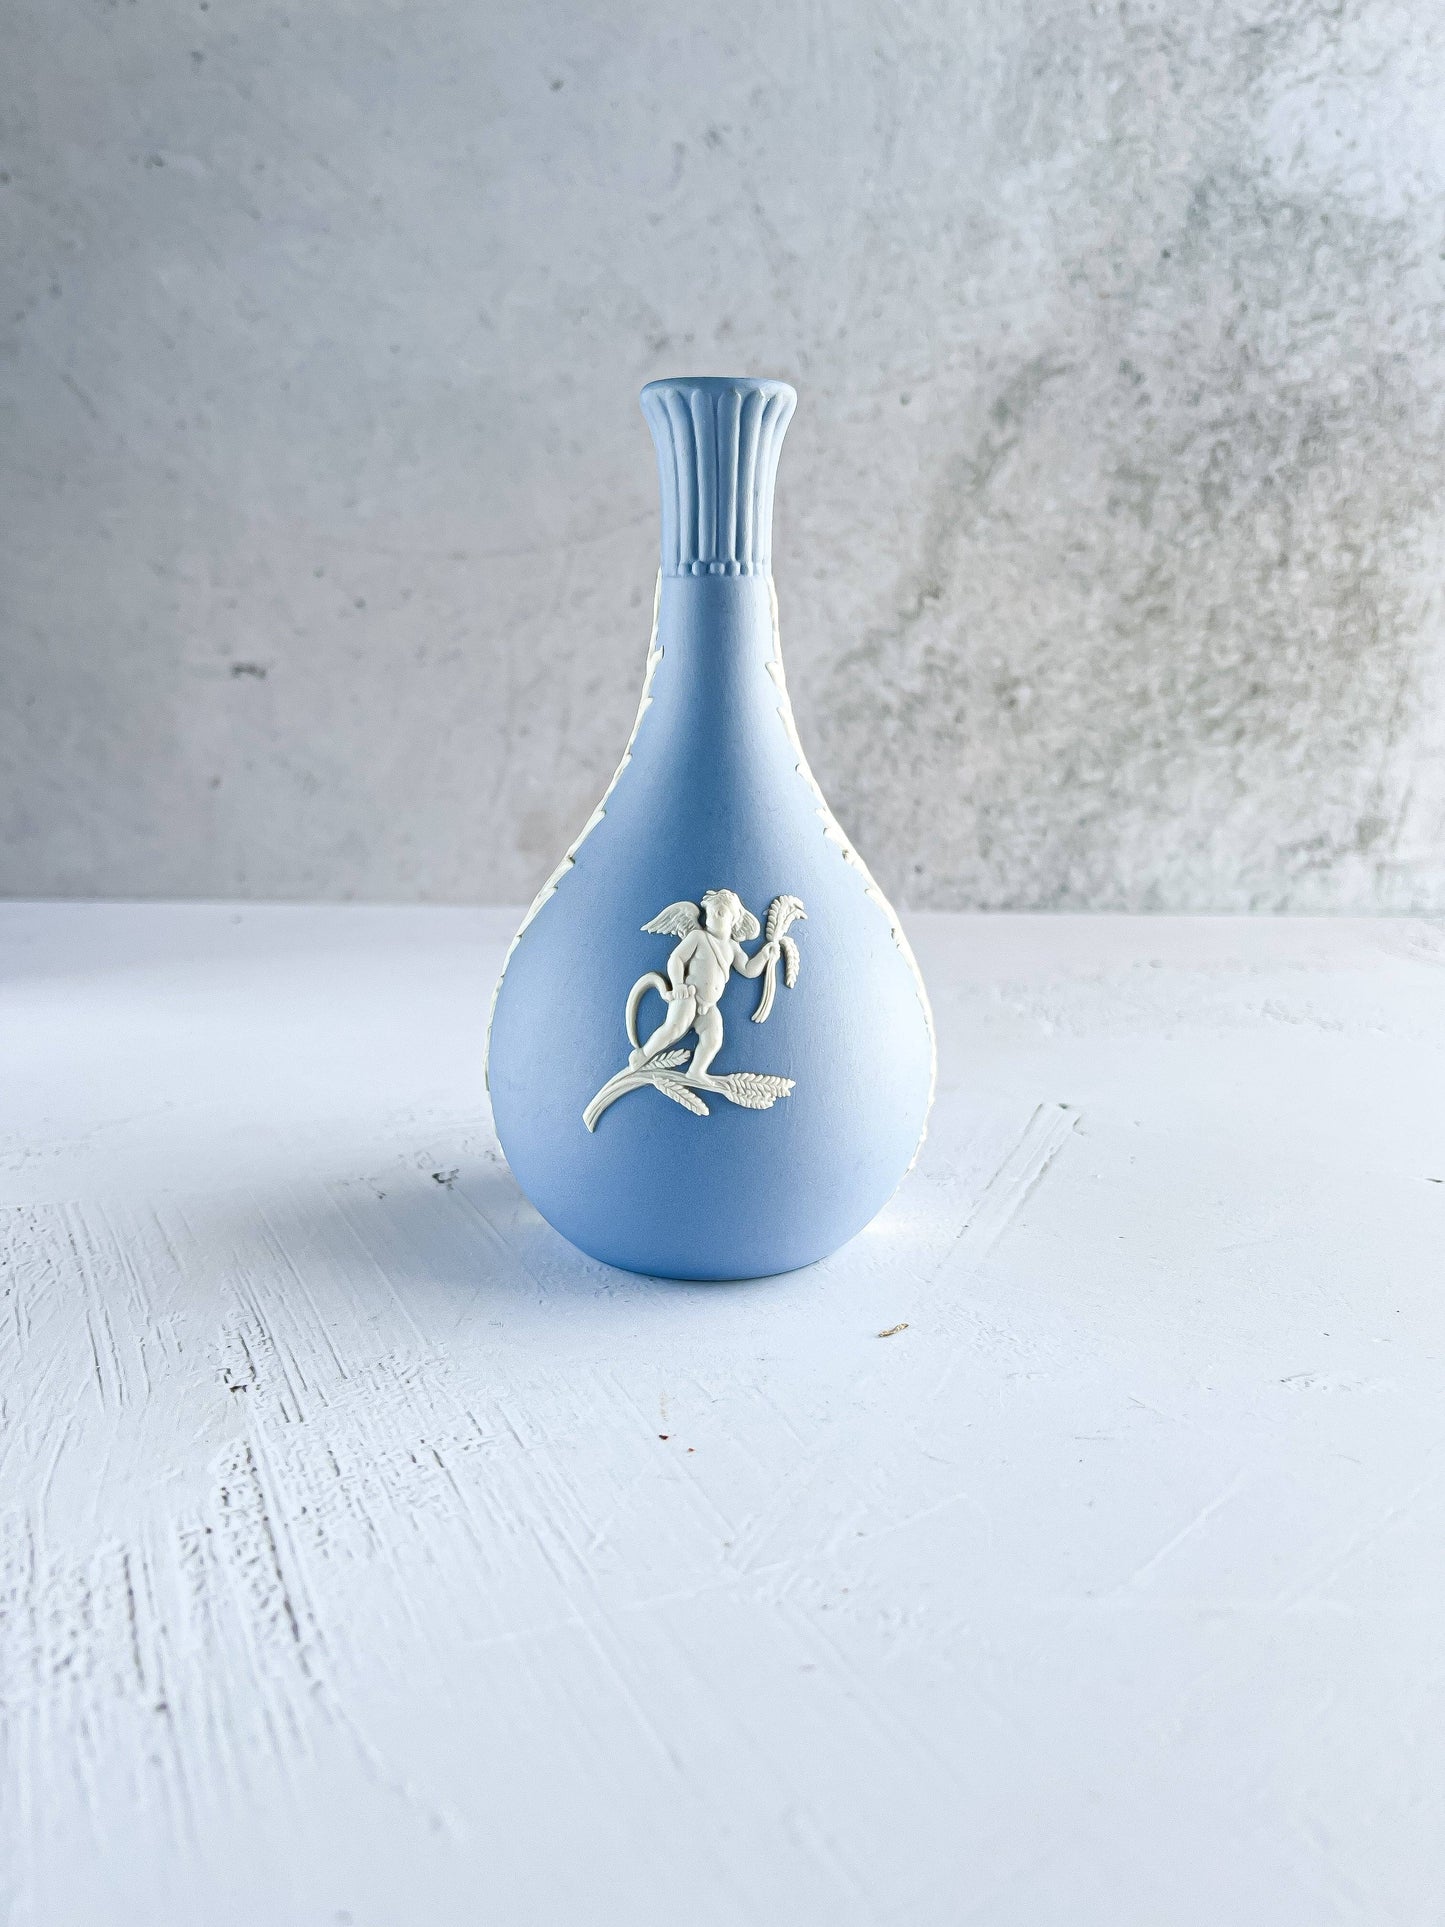 Wedgwood Jasperware Pale Blue Bud Vase - 'Cupid in Fall & Winter' Design - SOSC Home